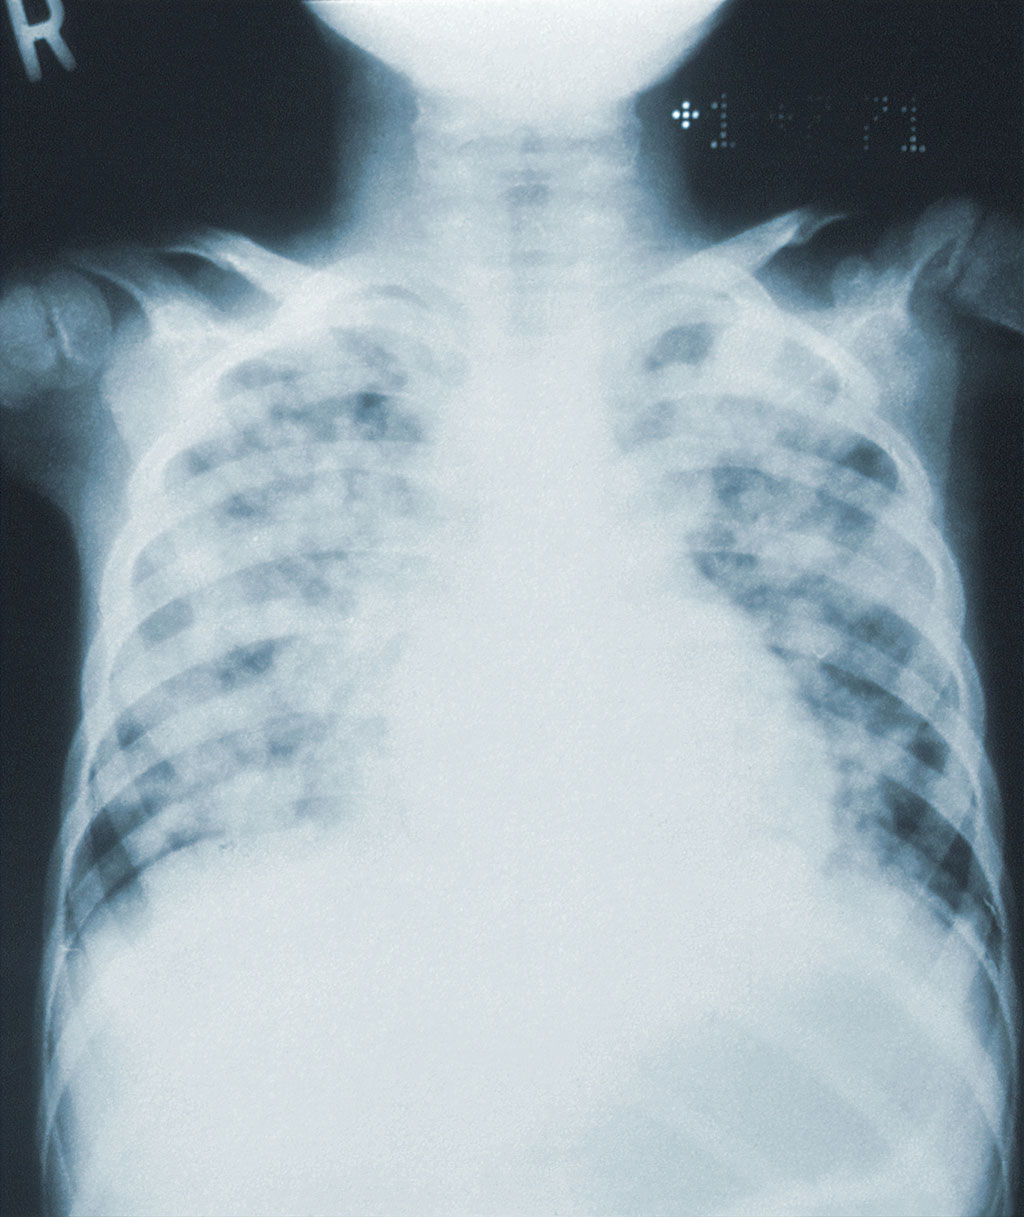 Image: Novel AI-based technology for chest CT analysis of idiopathic pulmonary fibrosis (Photo courtesy of Unsplash)